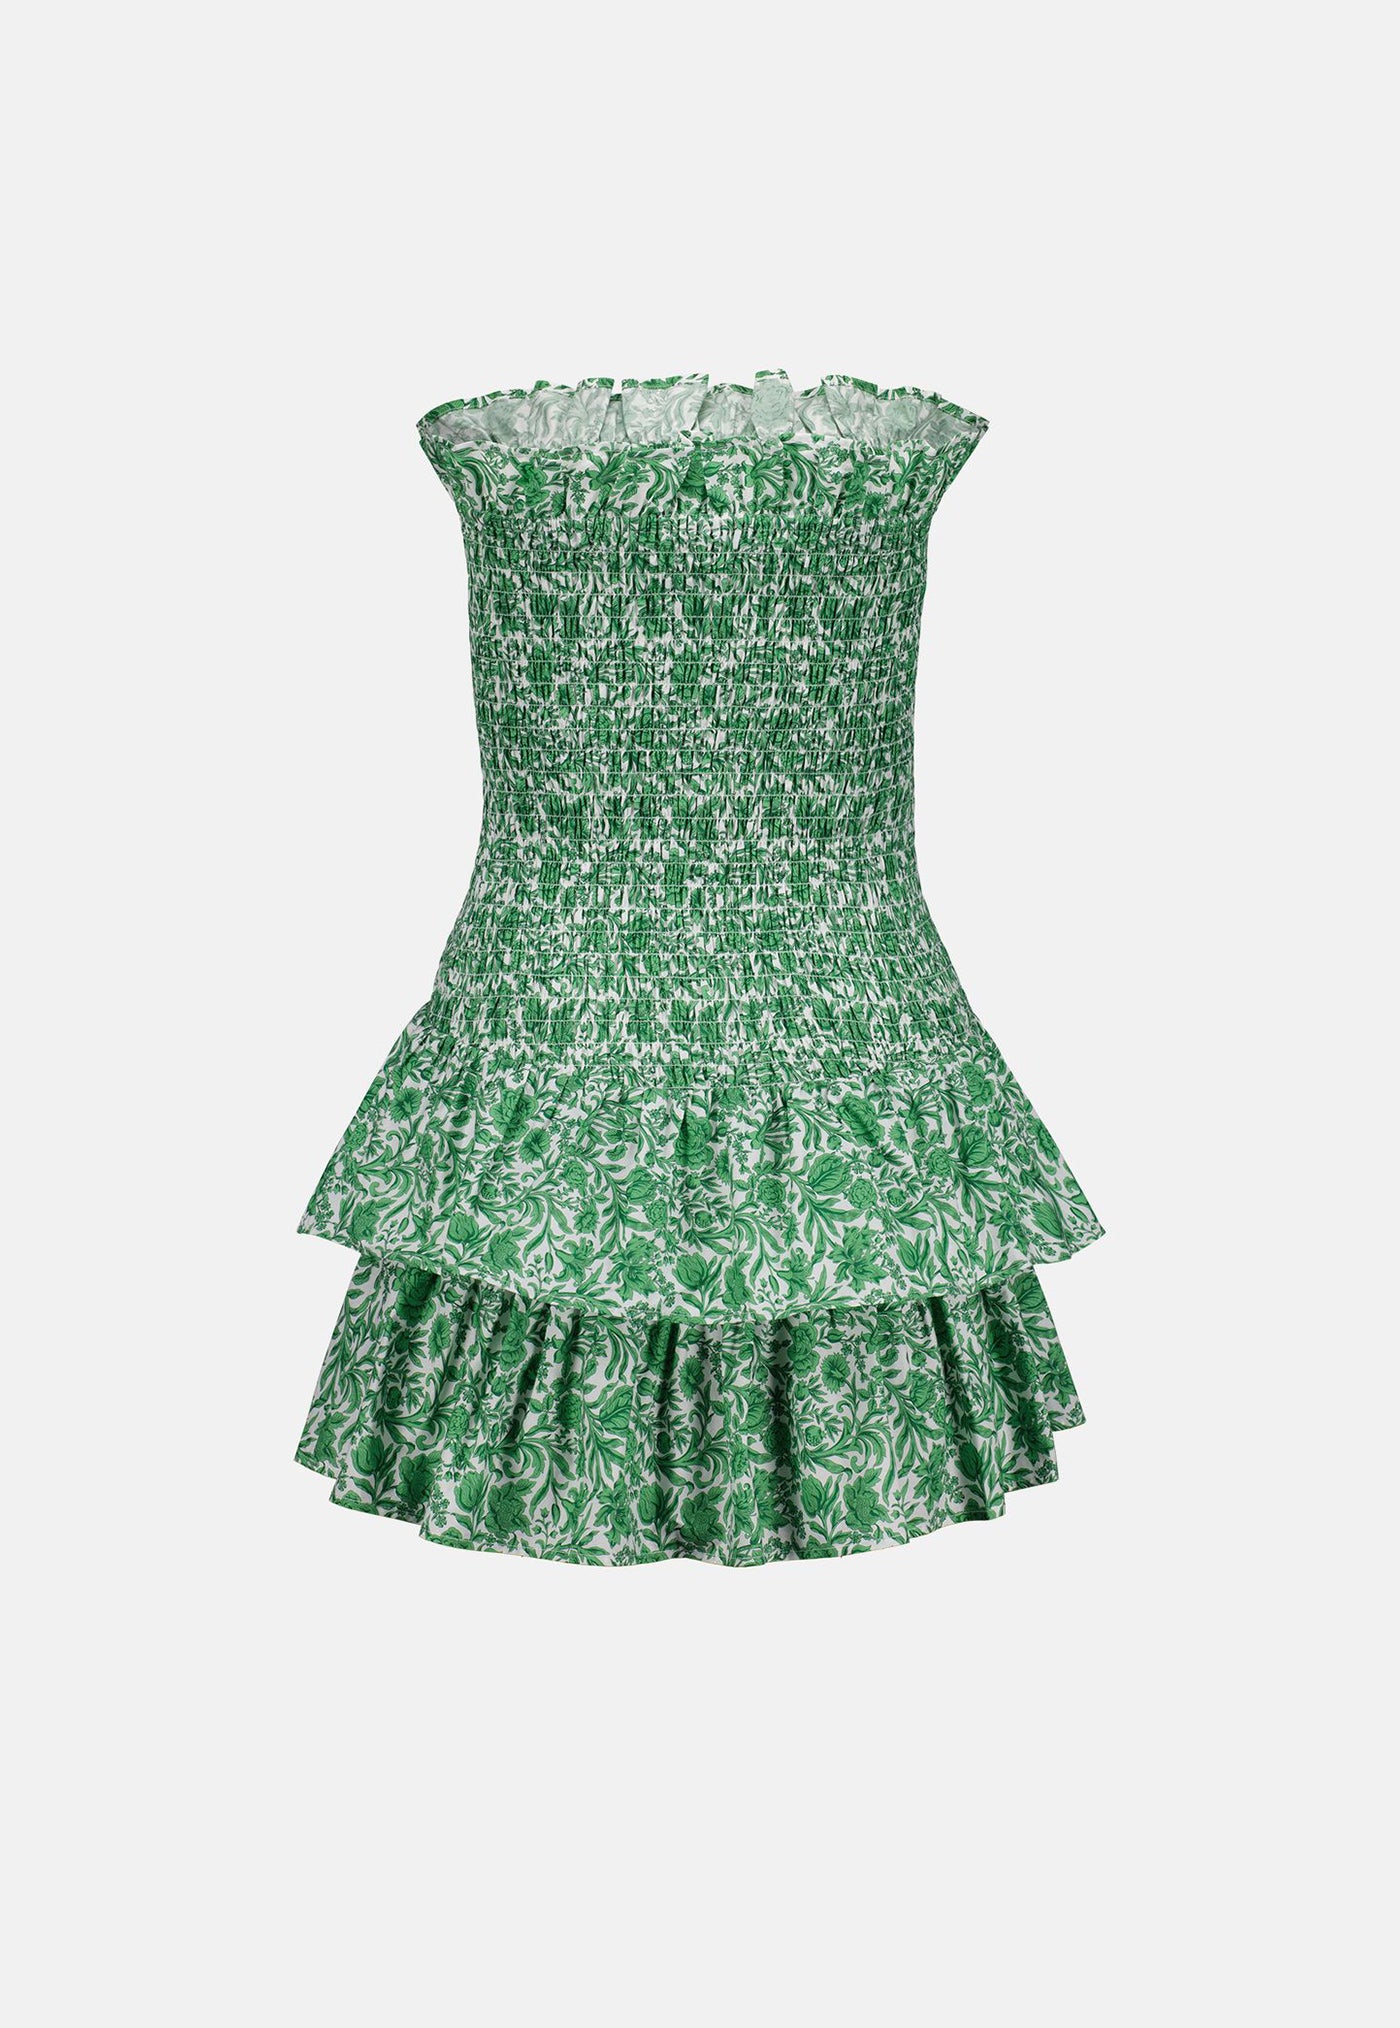 Georgette Dress - Green Liberty Poplin sold by Angel Divine